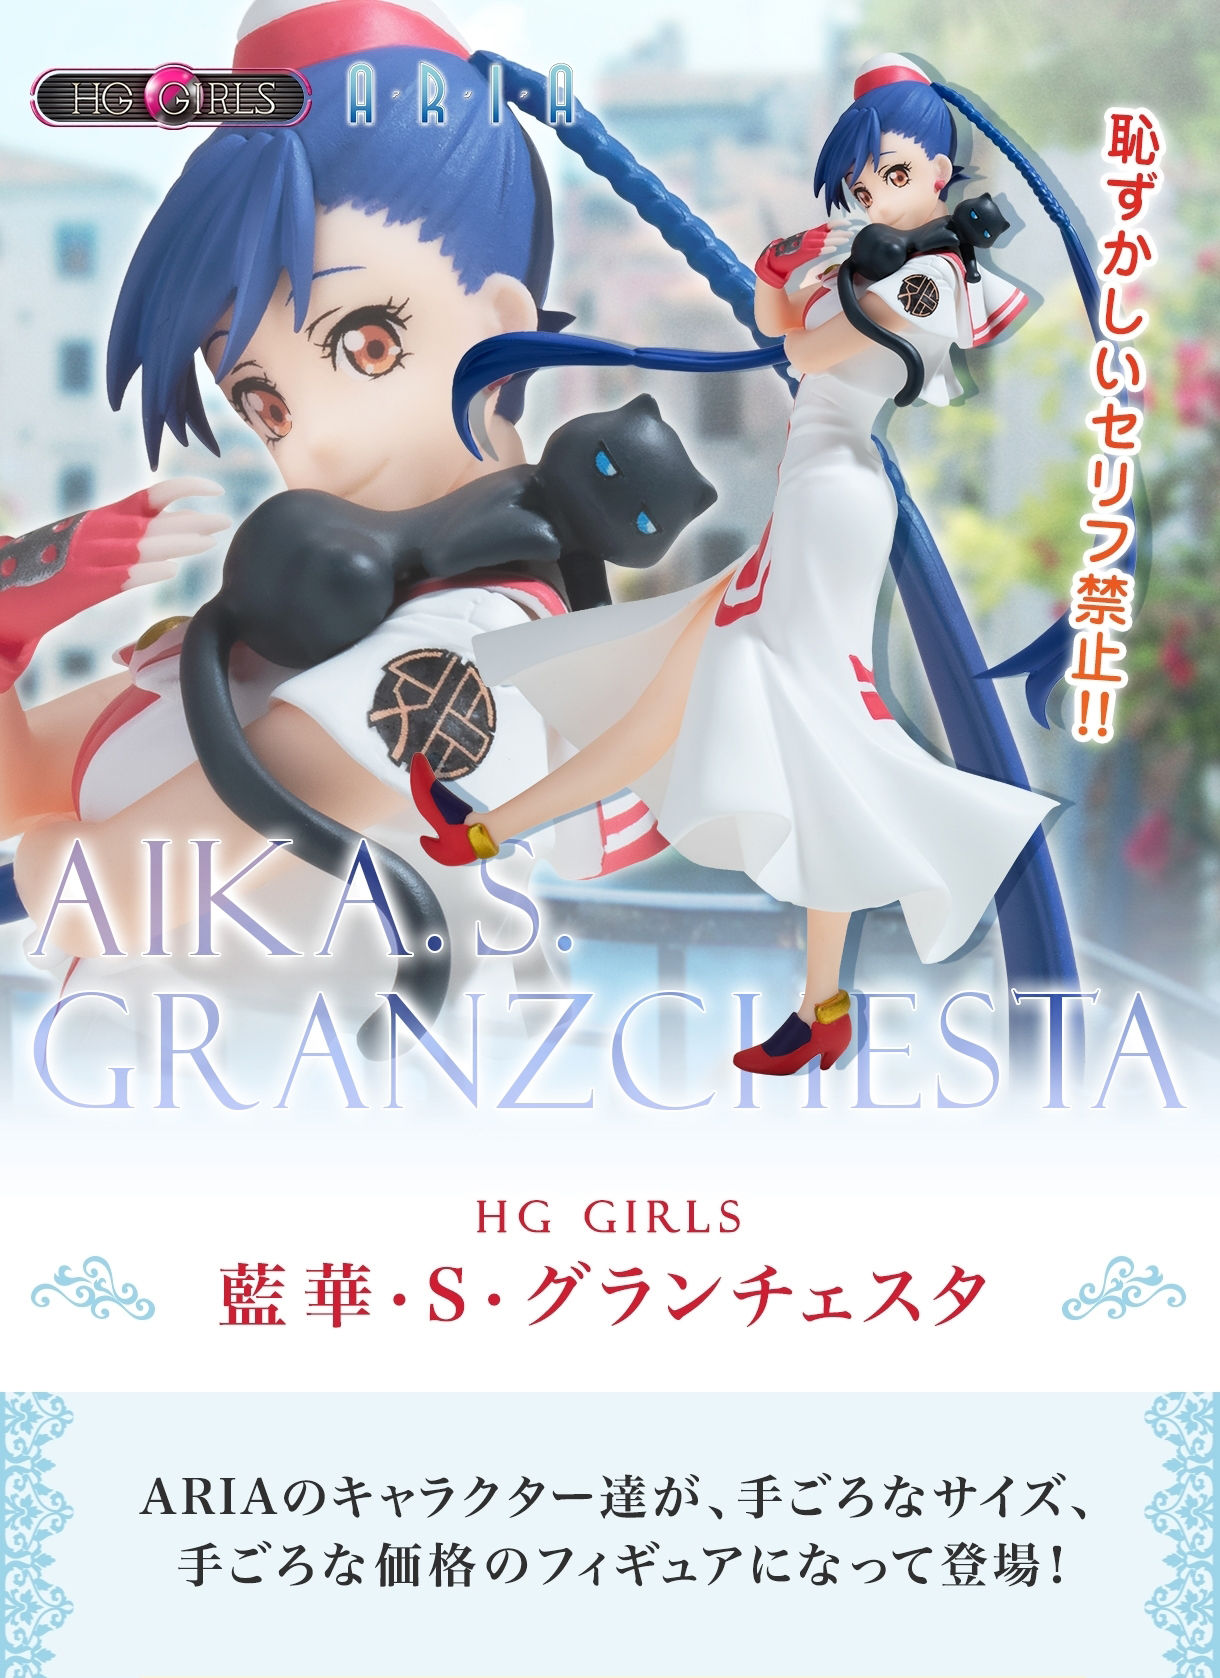 ARIA×HG GIRLS 藍華・S・グランチェスタ | フィギュア・プラモデル